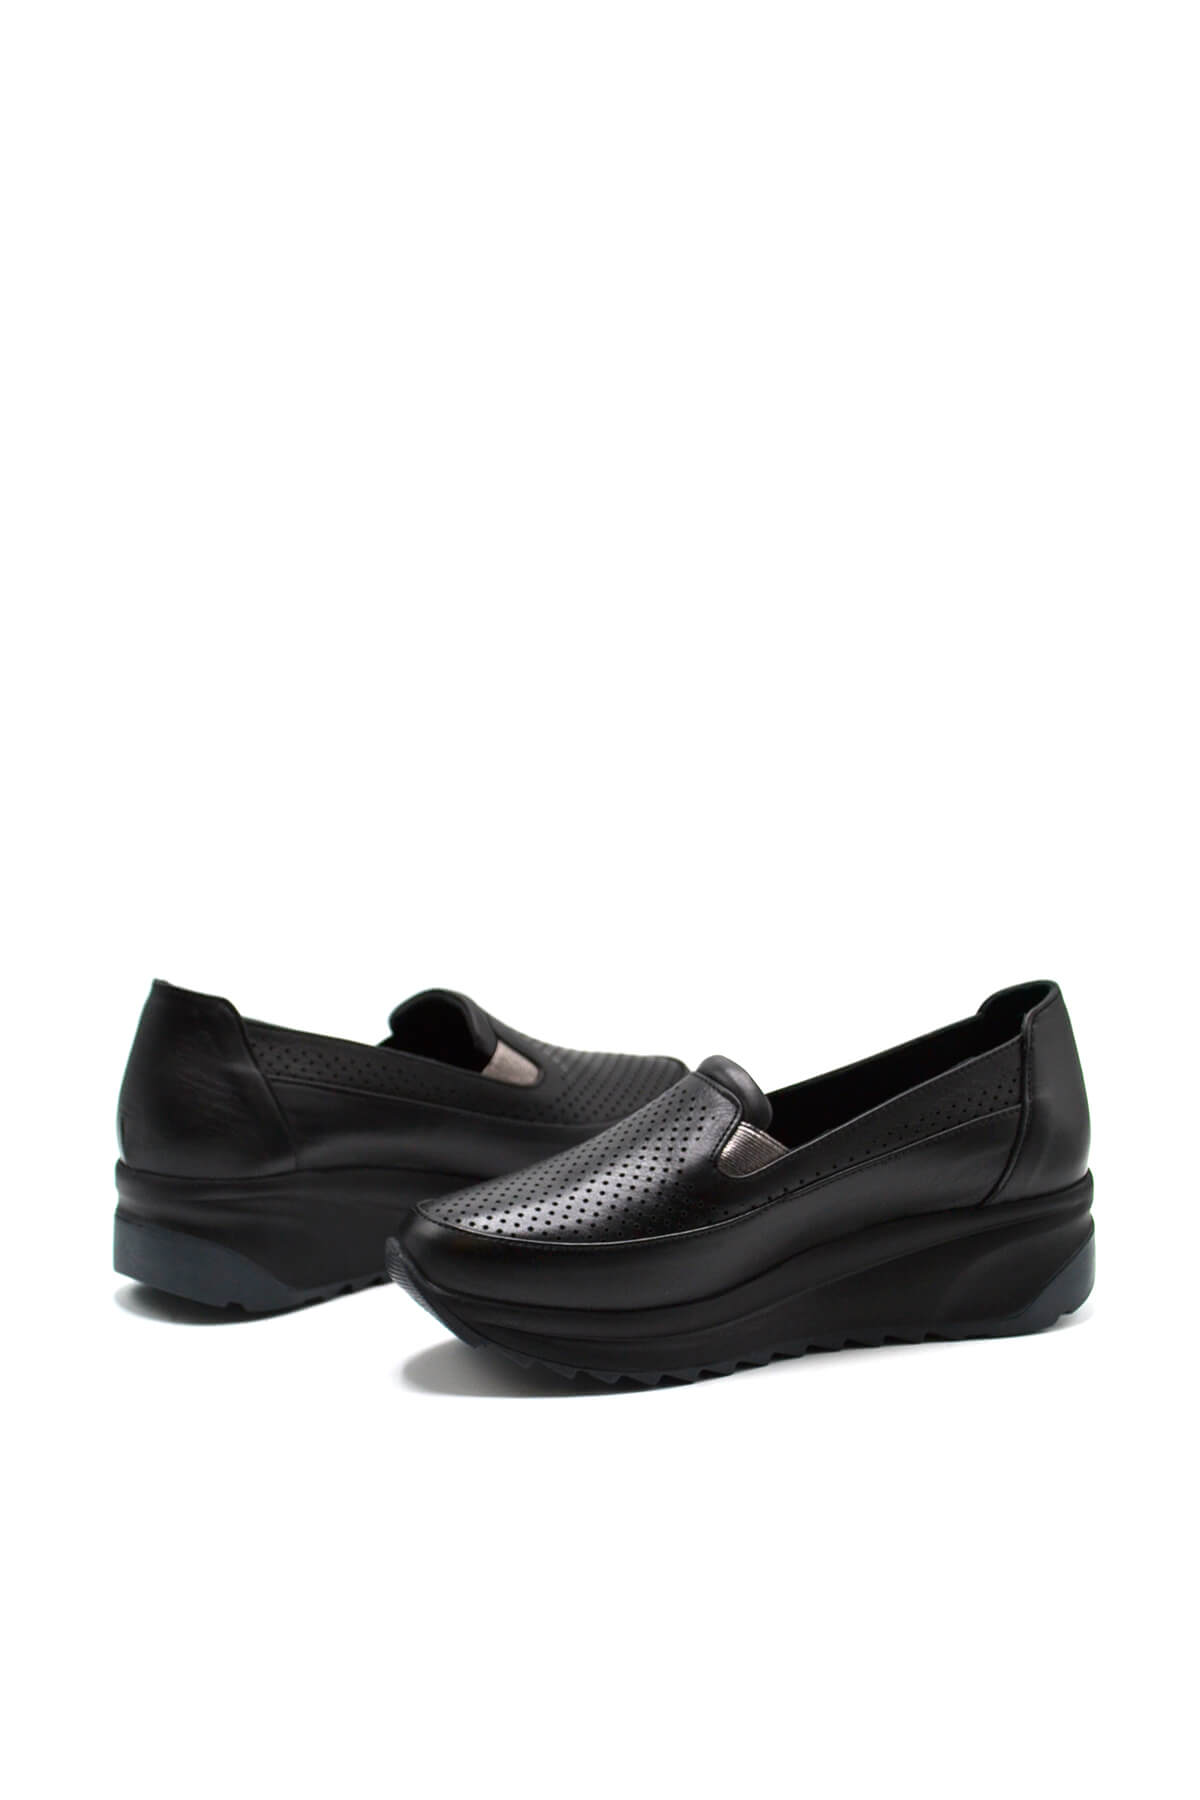 Kadın Dolgu Topuk Deri Sneakers Siyah 2310302Y - Thumbnail